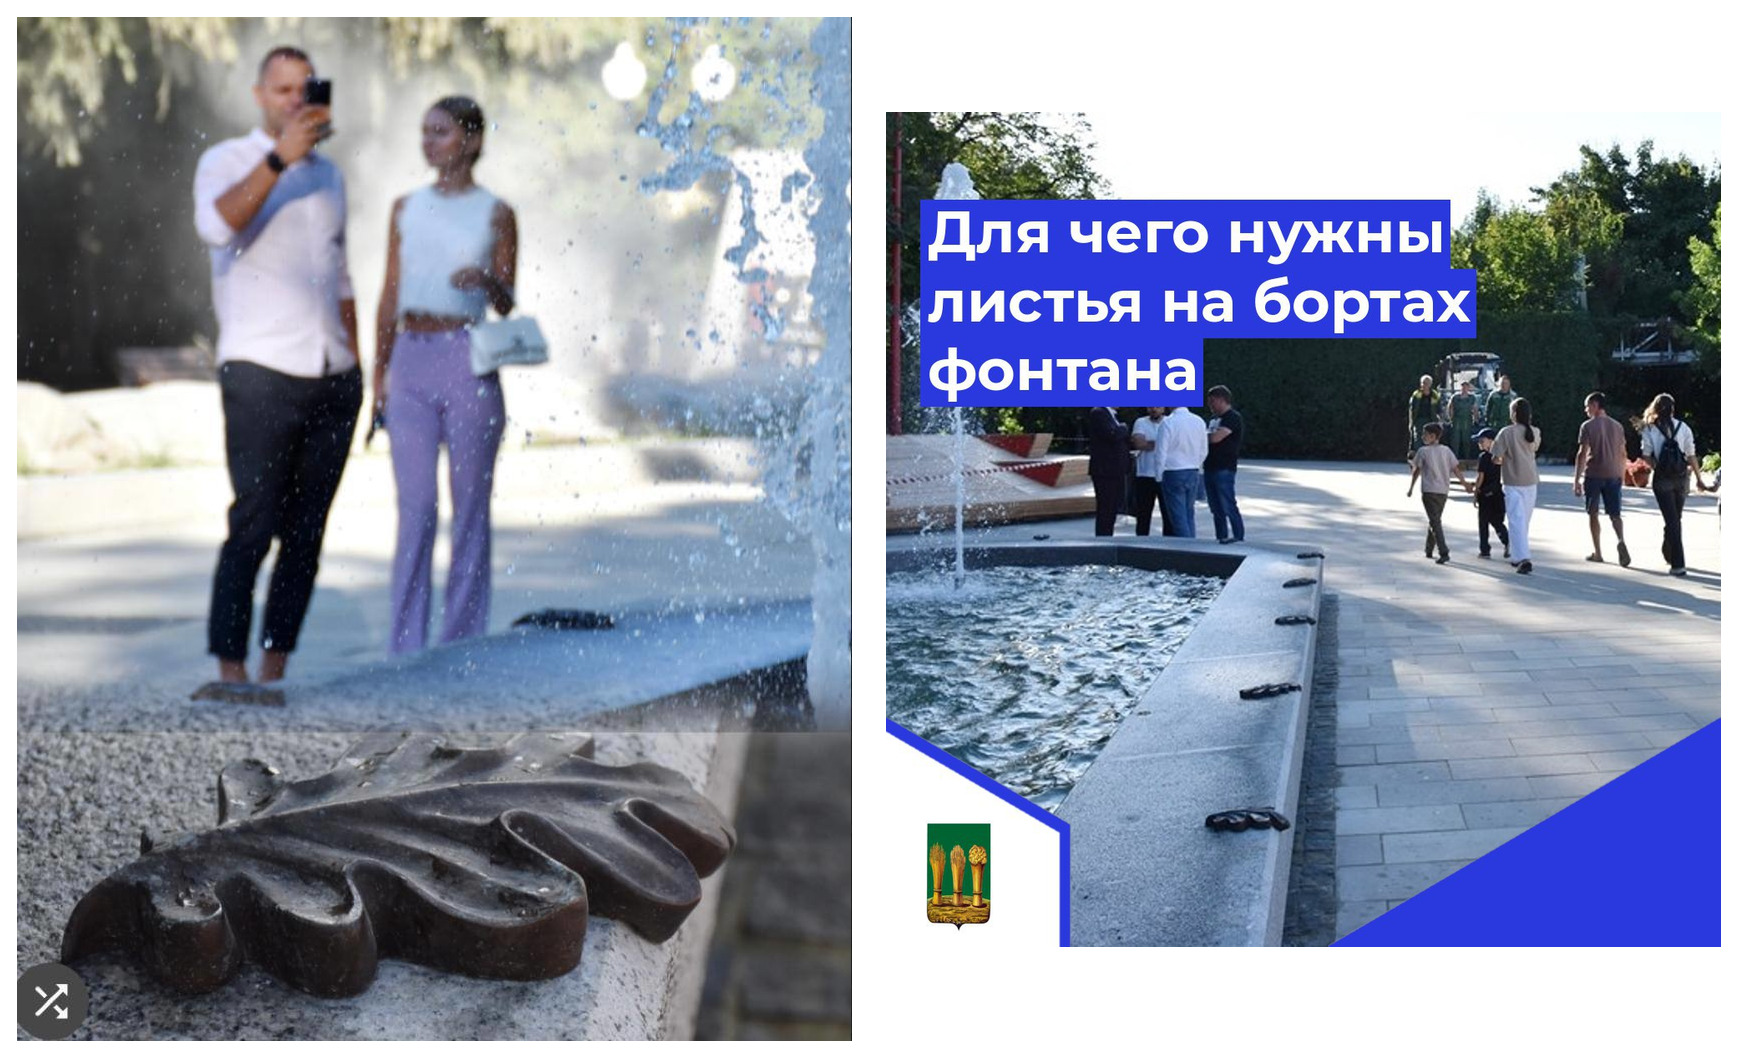 В мэрии Пензы объяснили назначение кованых листиков дуба на новом фонтане в парке Белинского